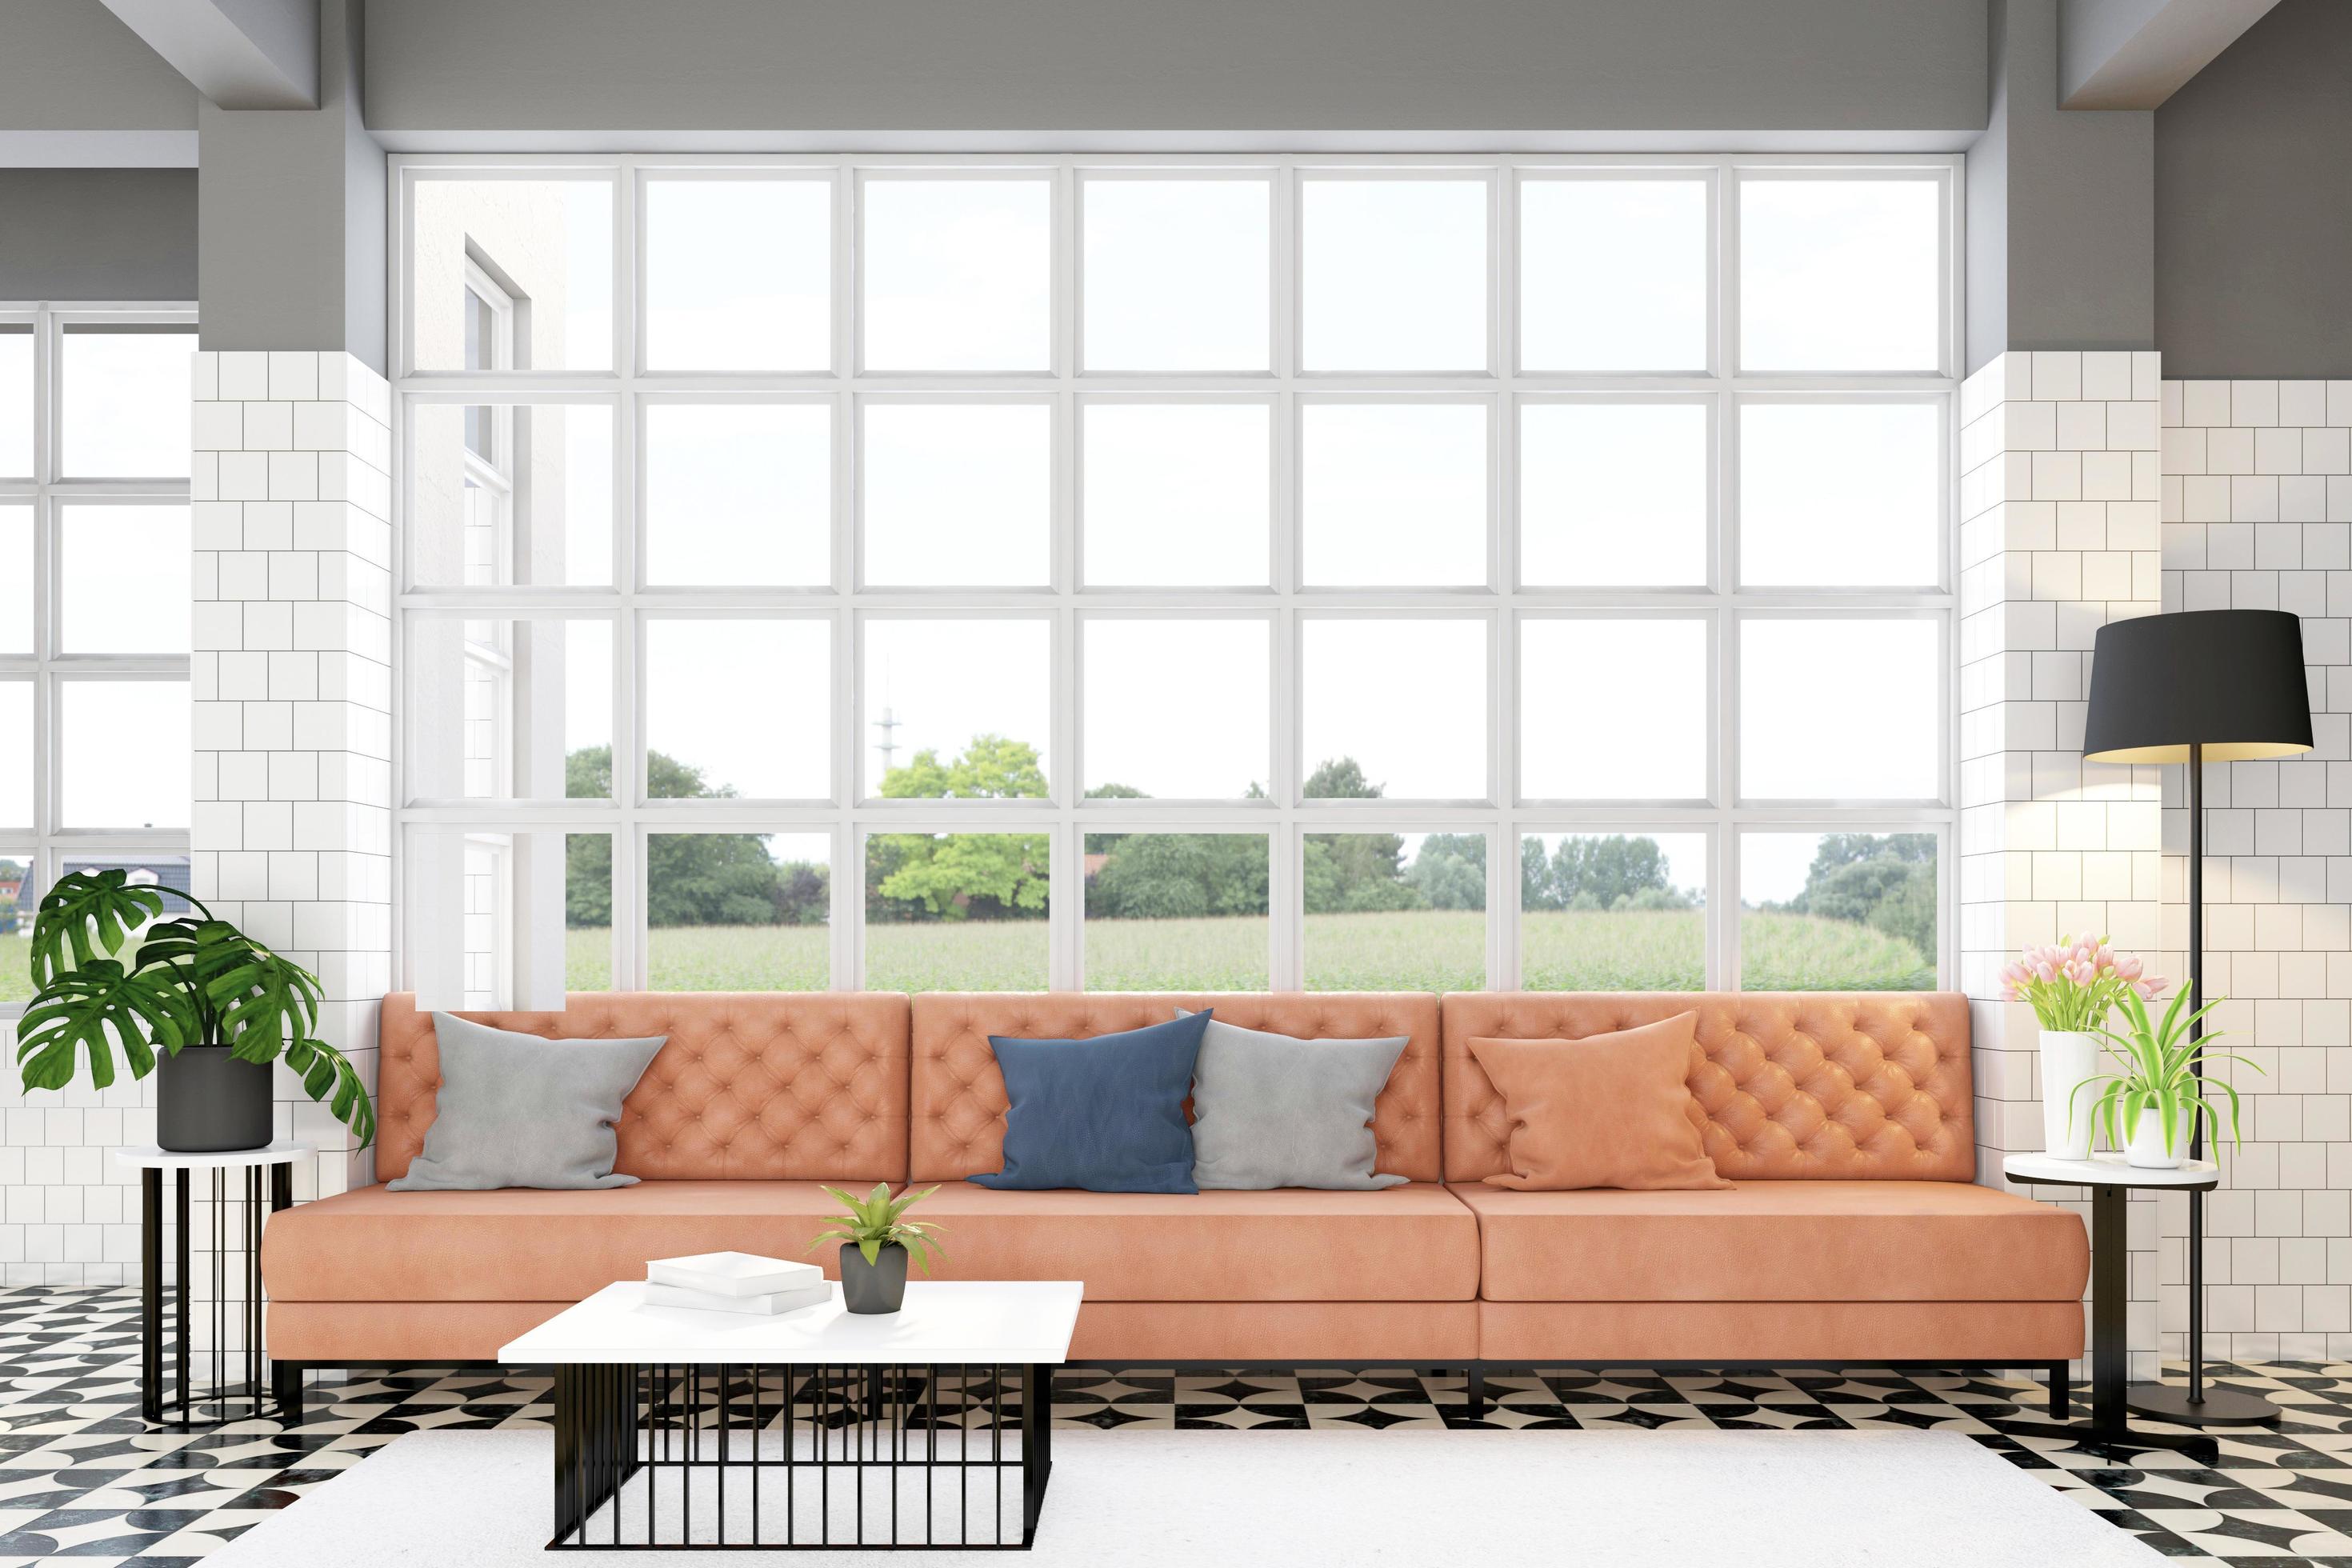 luxe oranje leren bank en salontafel, witte ramen en helder glas, marmeren patroonvloer. 3D-rendering 7114199 stockfoto Vecteezy